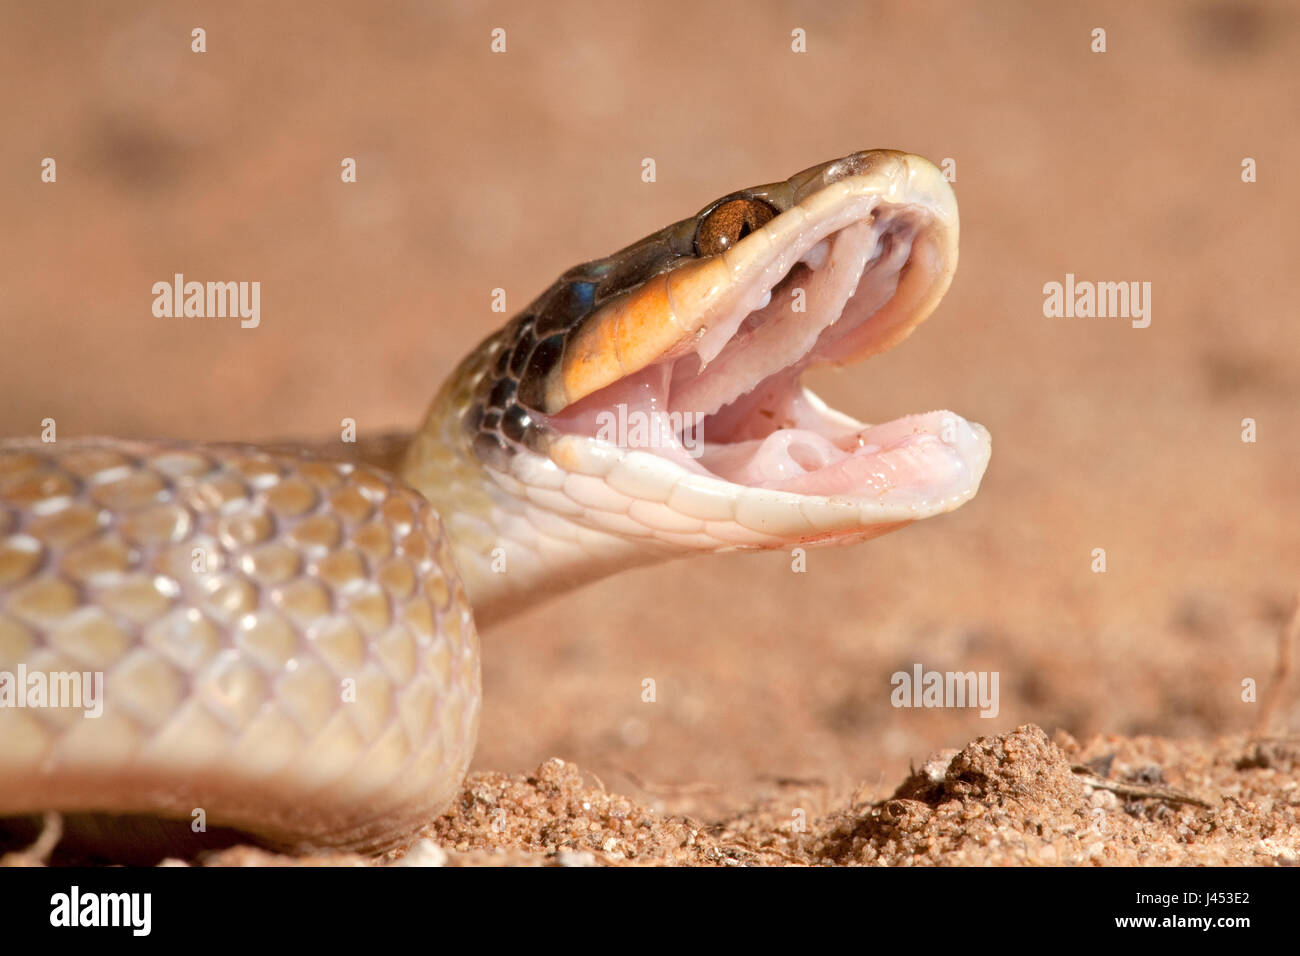 Photo d'un serpent à l'Herald l'arrière fang bien visible dans l'arrière de la bouche Banque D'Images